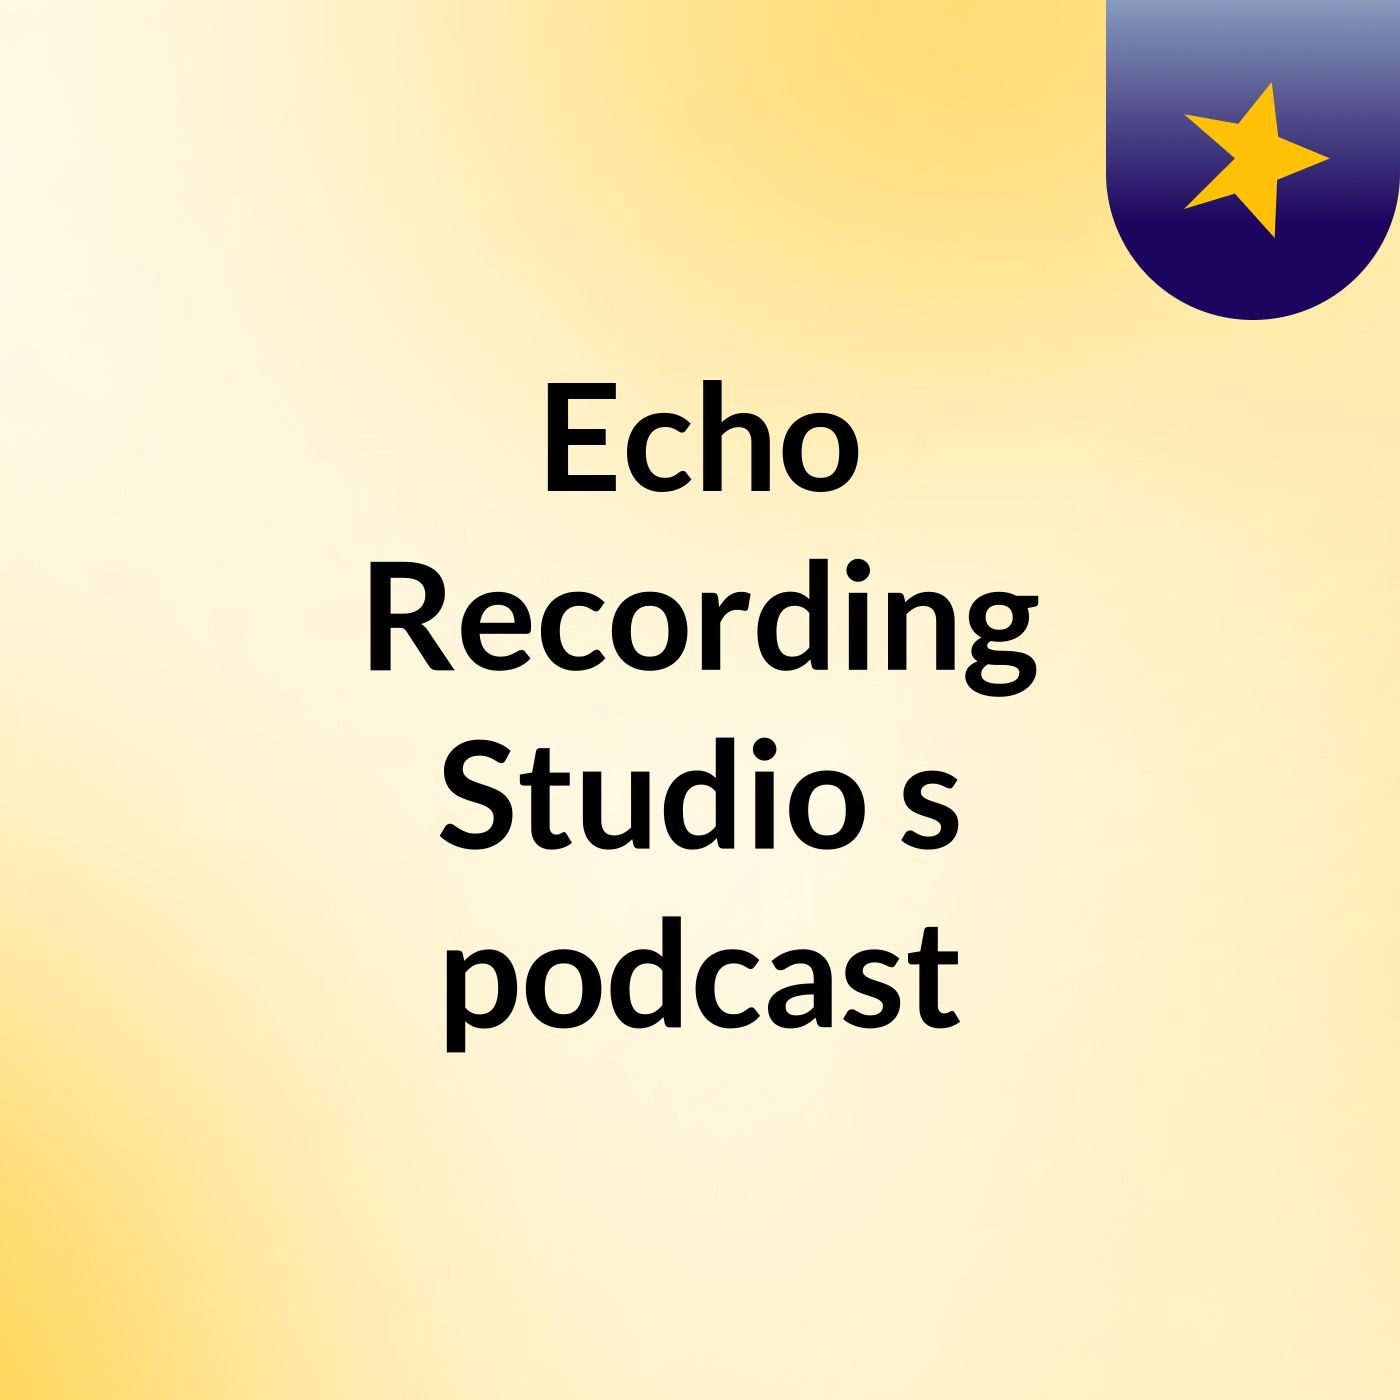 Echo Recording Studio's podcast